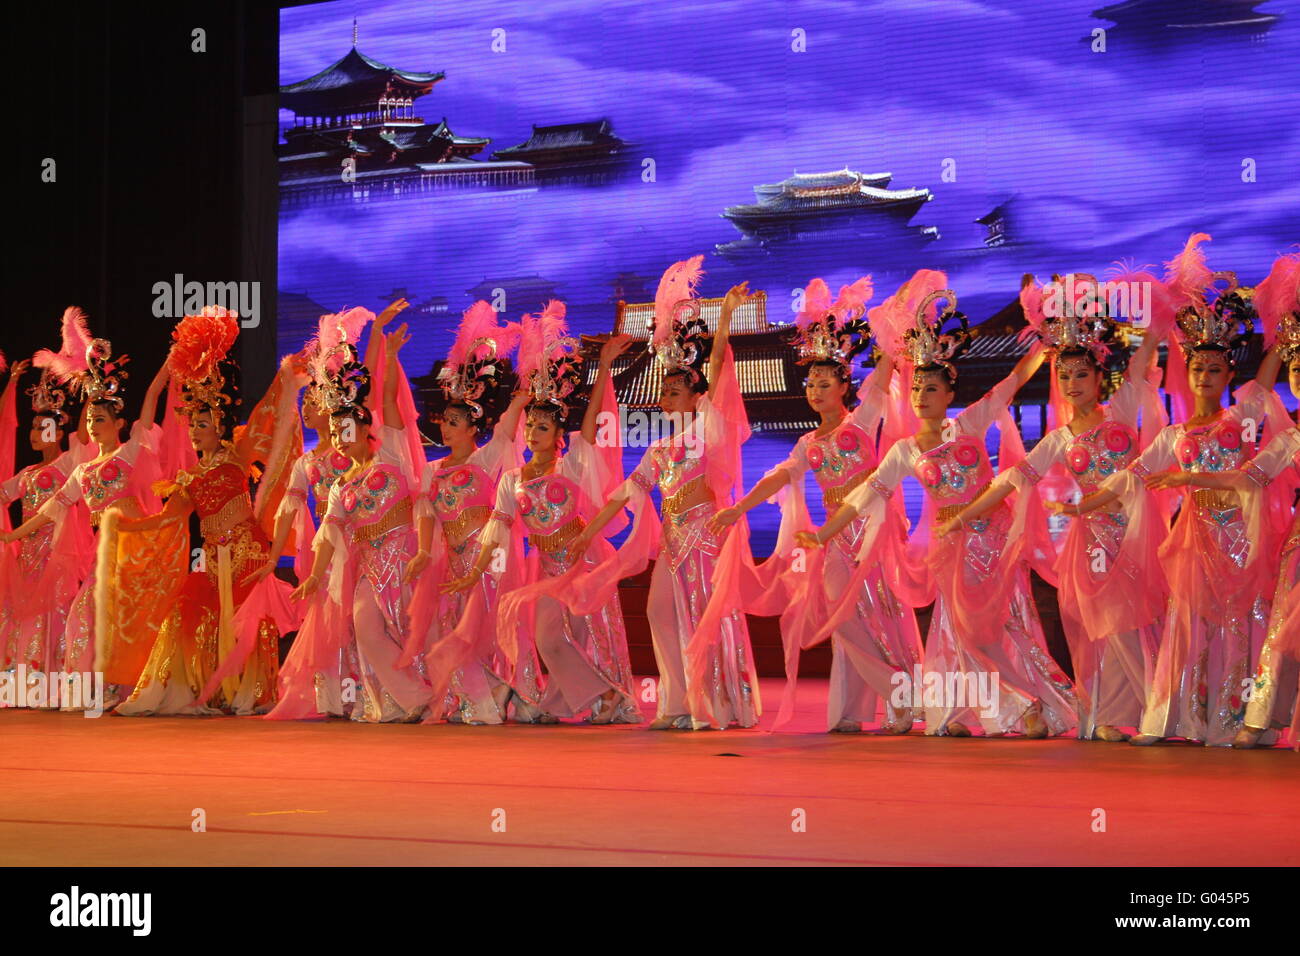 theatre of dancing in Xi'an / Xian, China Stock Photo